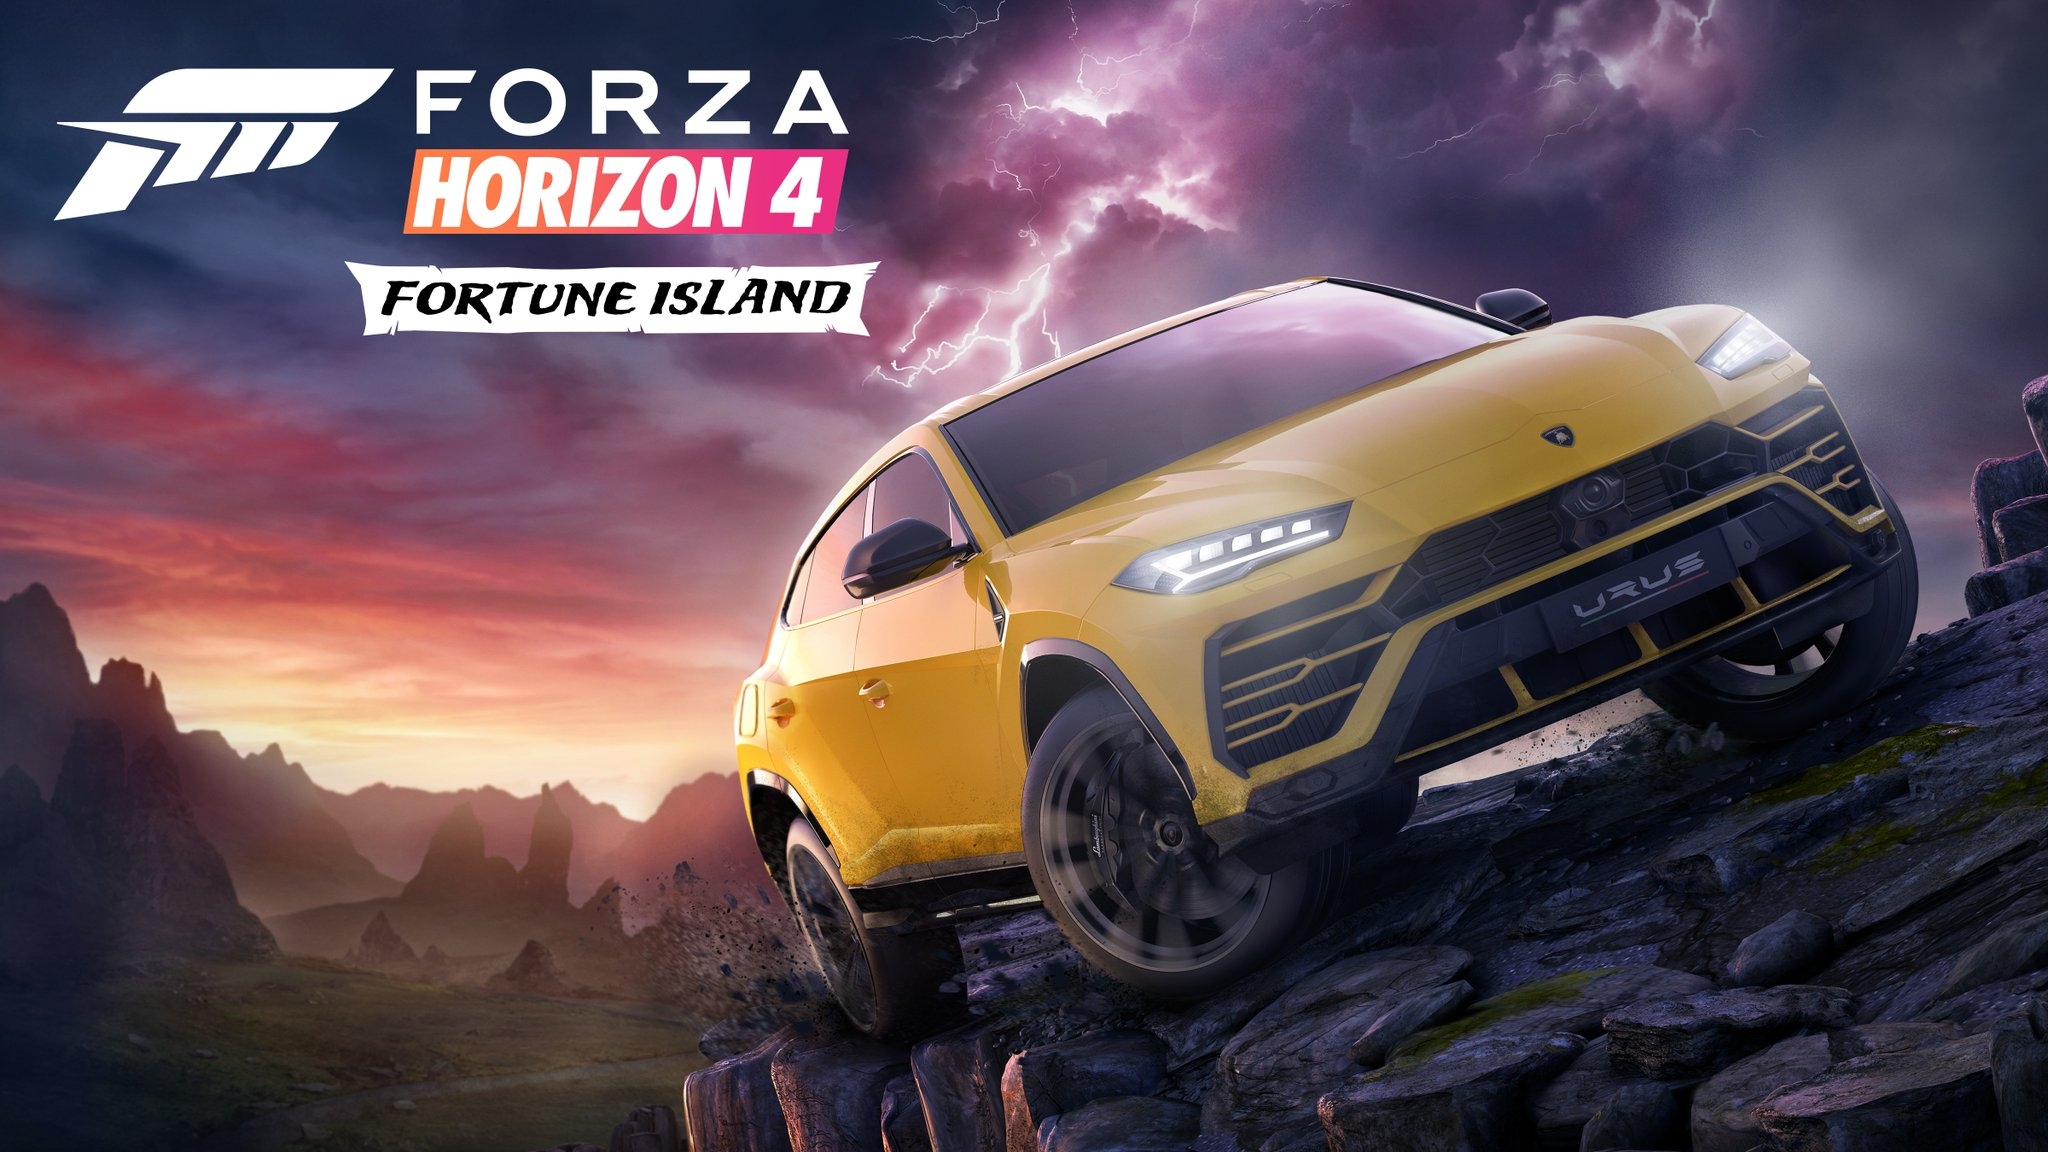 Finito Prescribir puño Comprar Forza Horizon 4 Fortune Island (PC / Xbox ONE / Xbox Series X|S)  Microsoft Store